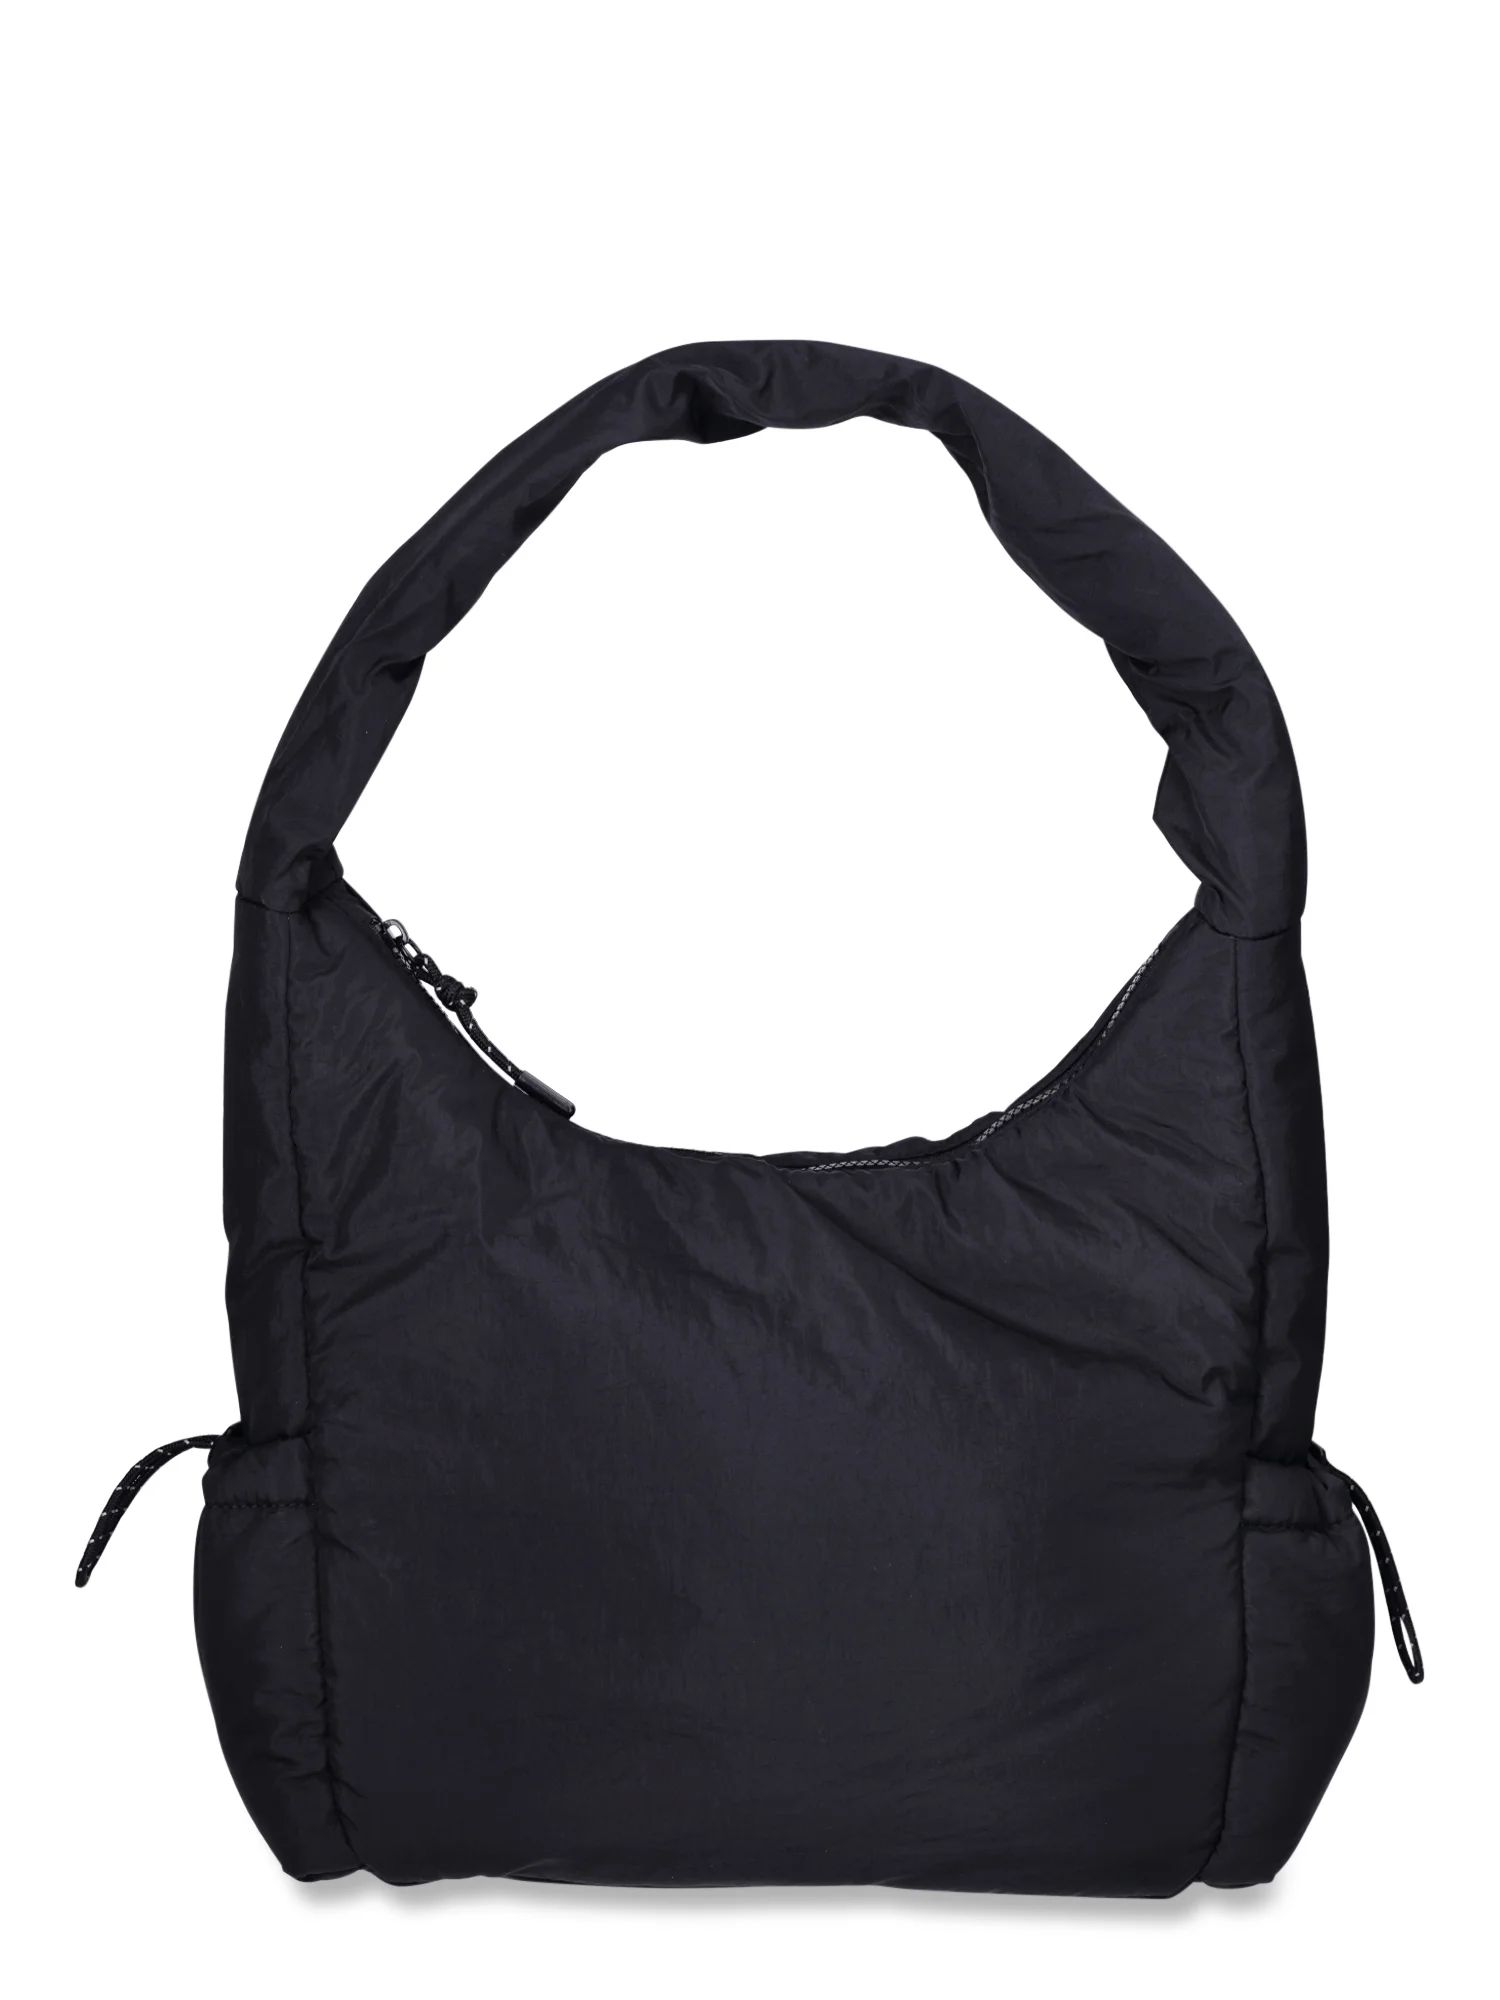 Athletic Works Women's Nylon Hobo Bag, Black | Walmart (US)